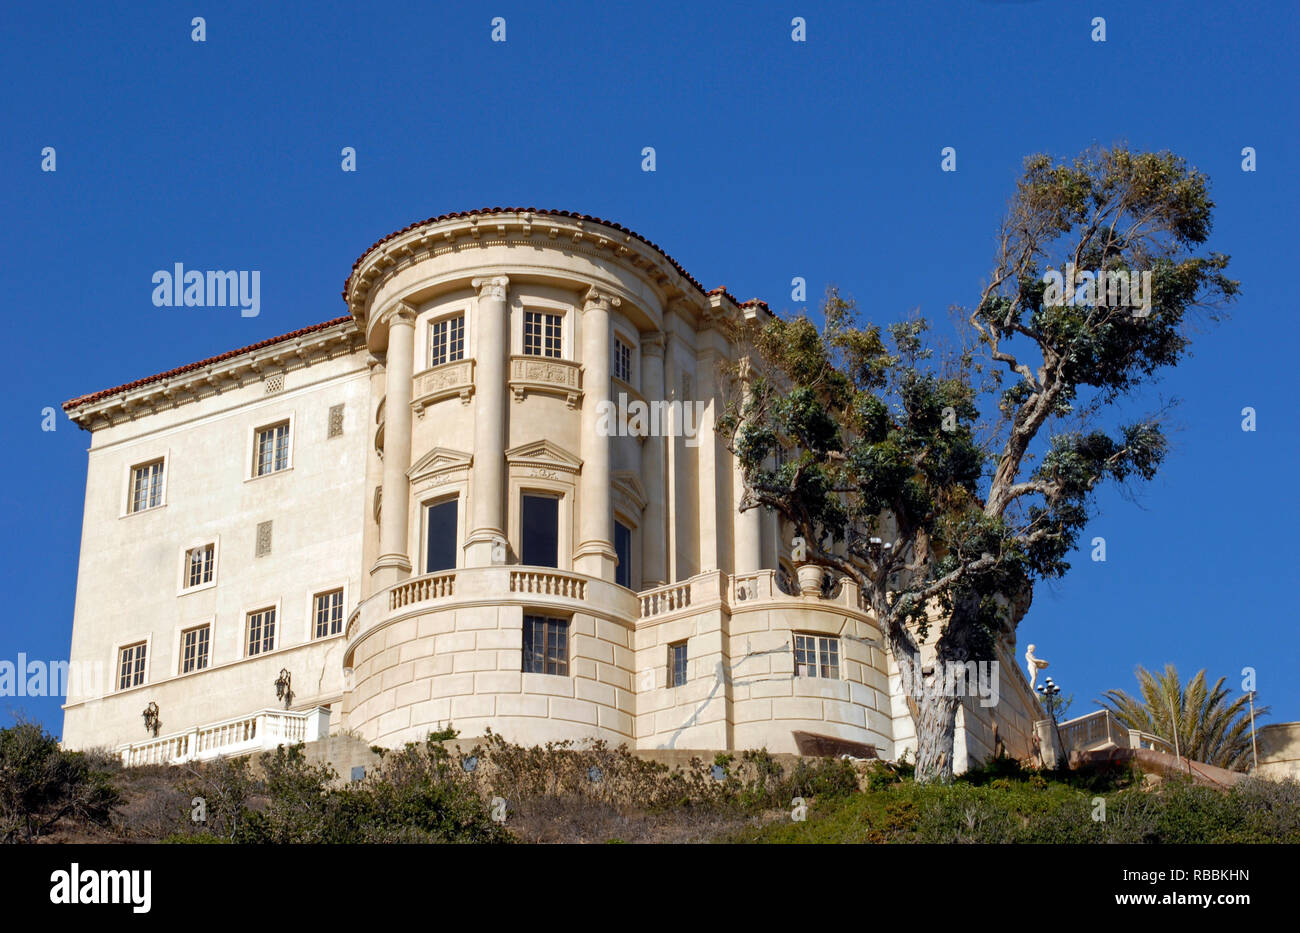 La Villa historique de Leon Pacific Palisades, CA, donne sur l'Autoroute de la côte Pacifique. Il est souvent confondu avec le musée Getty Villa à proximité. Banque D'Images